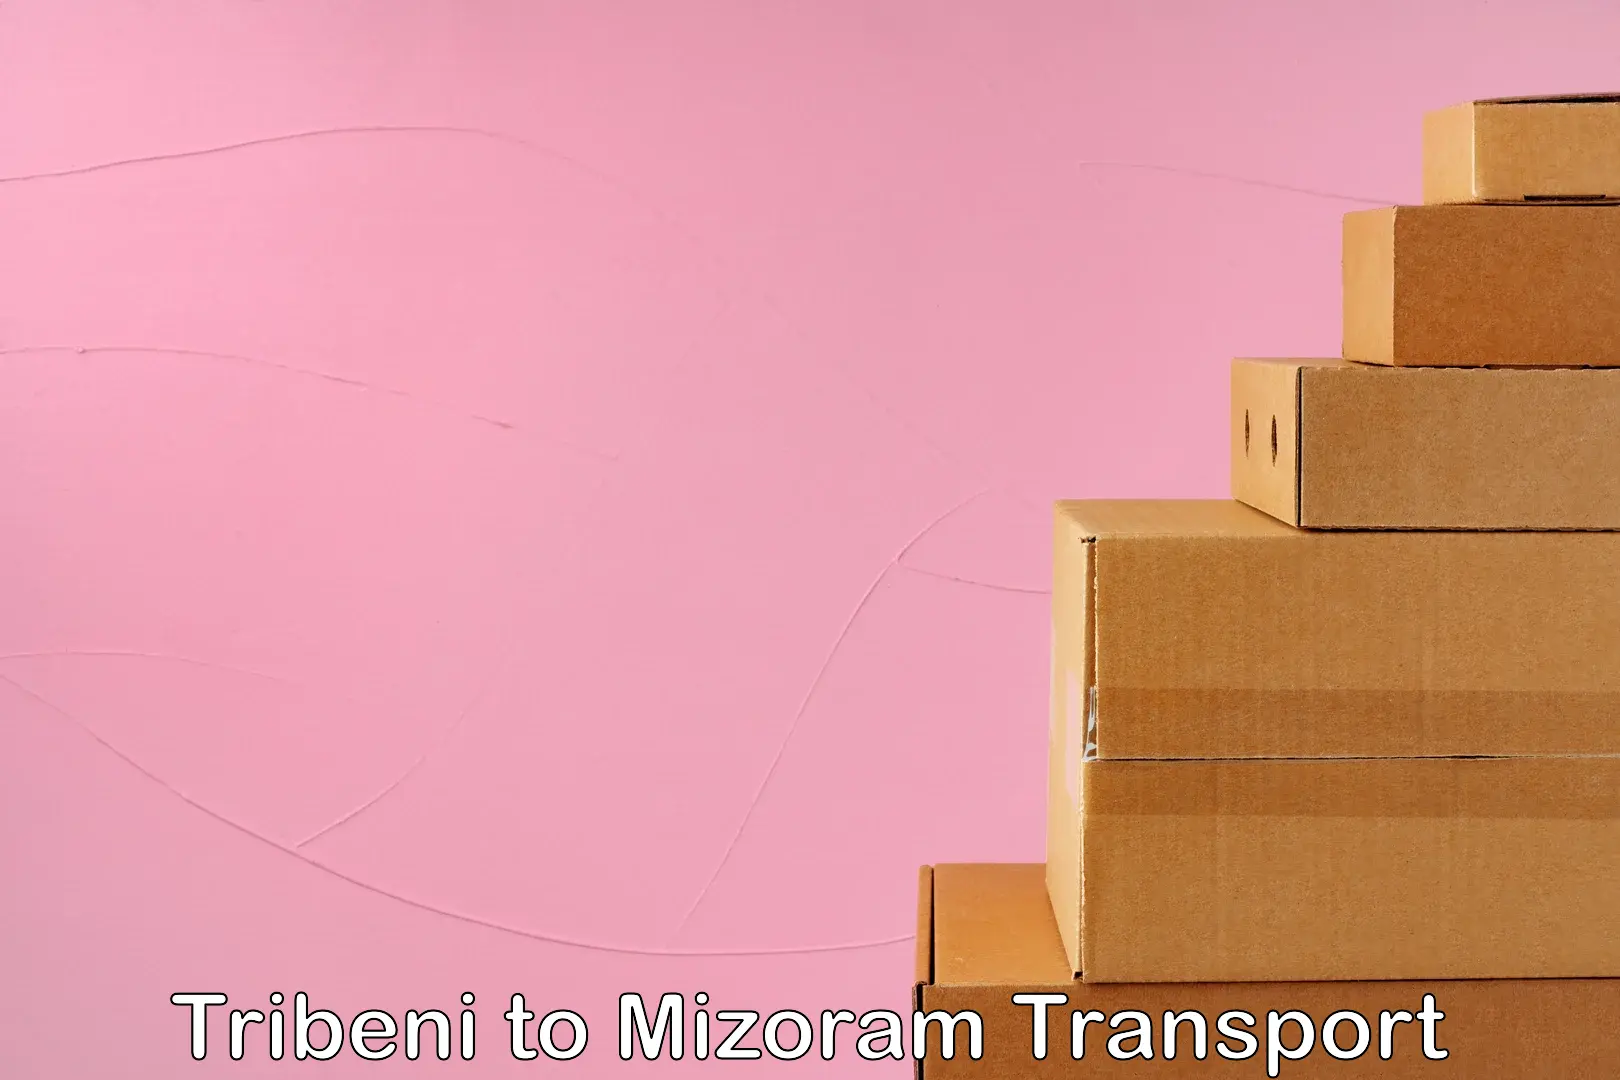 Transport in sharing Tribeni to Mizoram